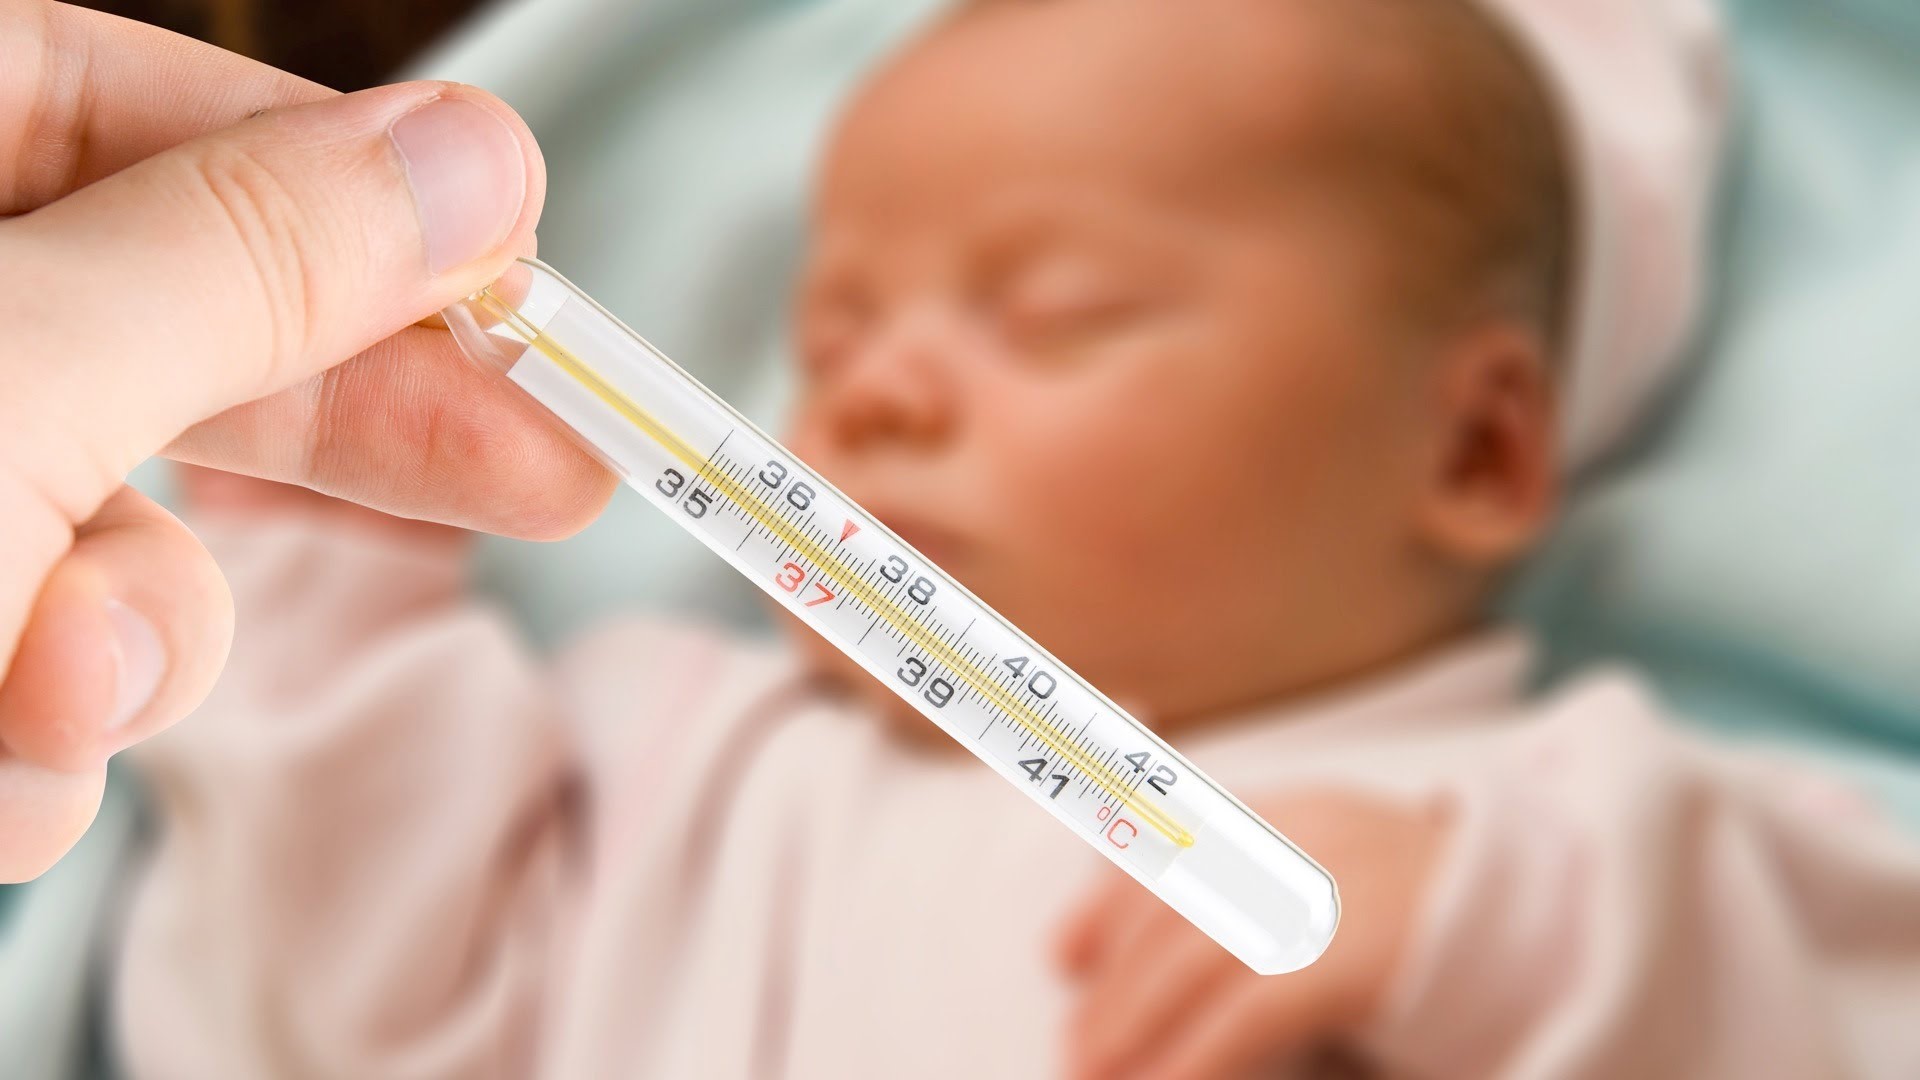   Hạ sốt cho trẻ tại nhà: các phương pháp an toàn tại nhà và triệu chứng cần đi khám sớm  